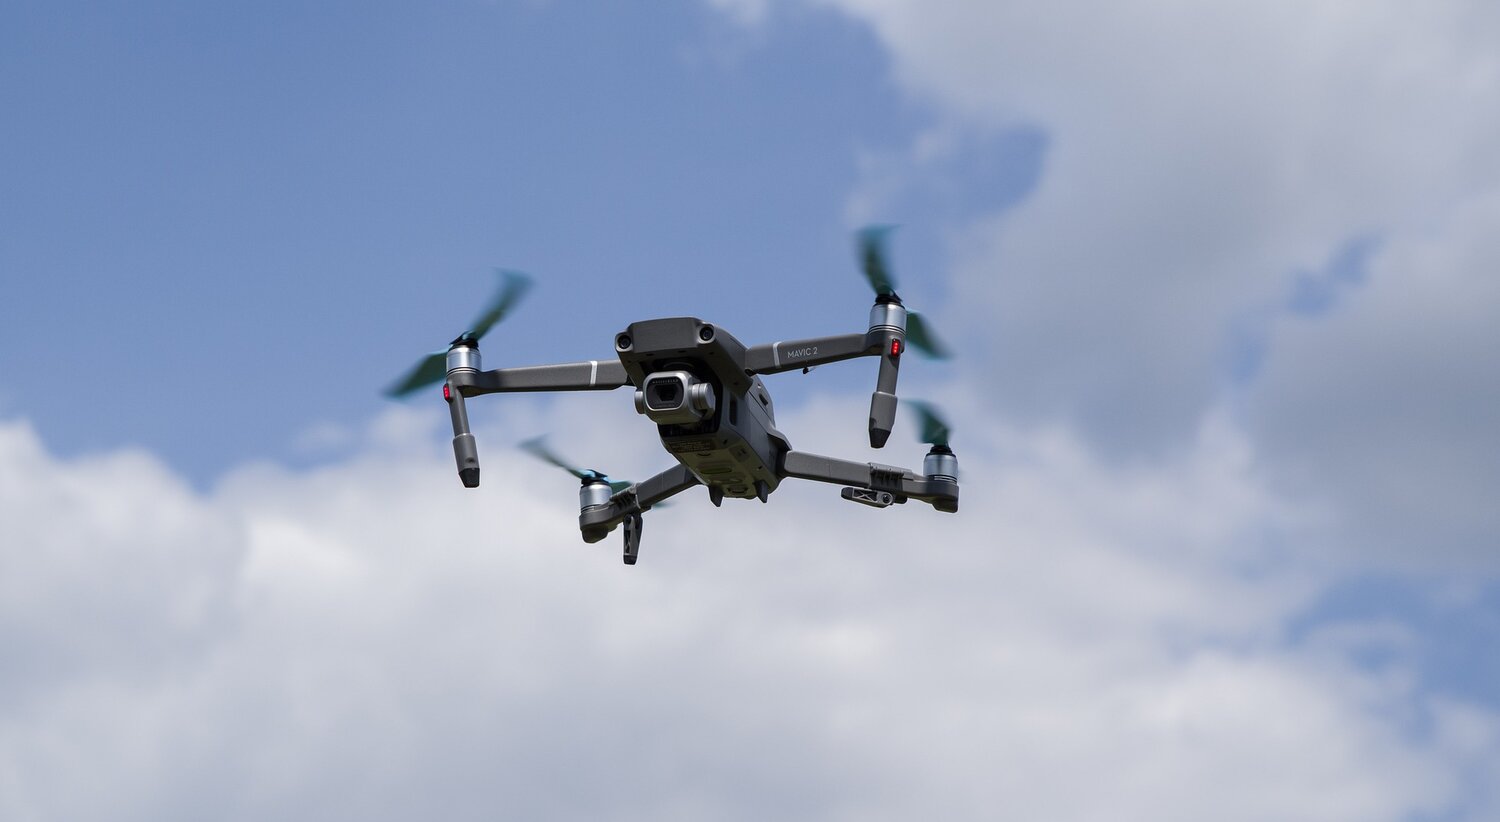 beskytte skære ned Ristede Drone inspektion — Rosebyg